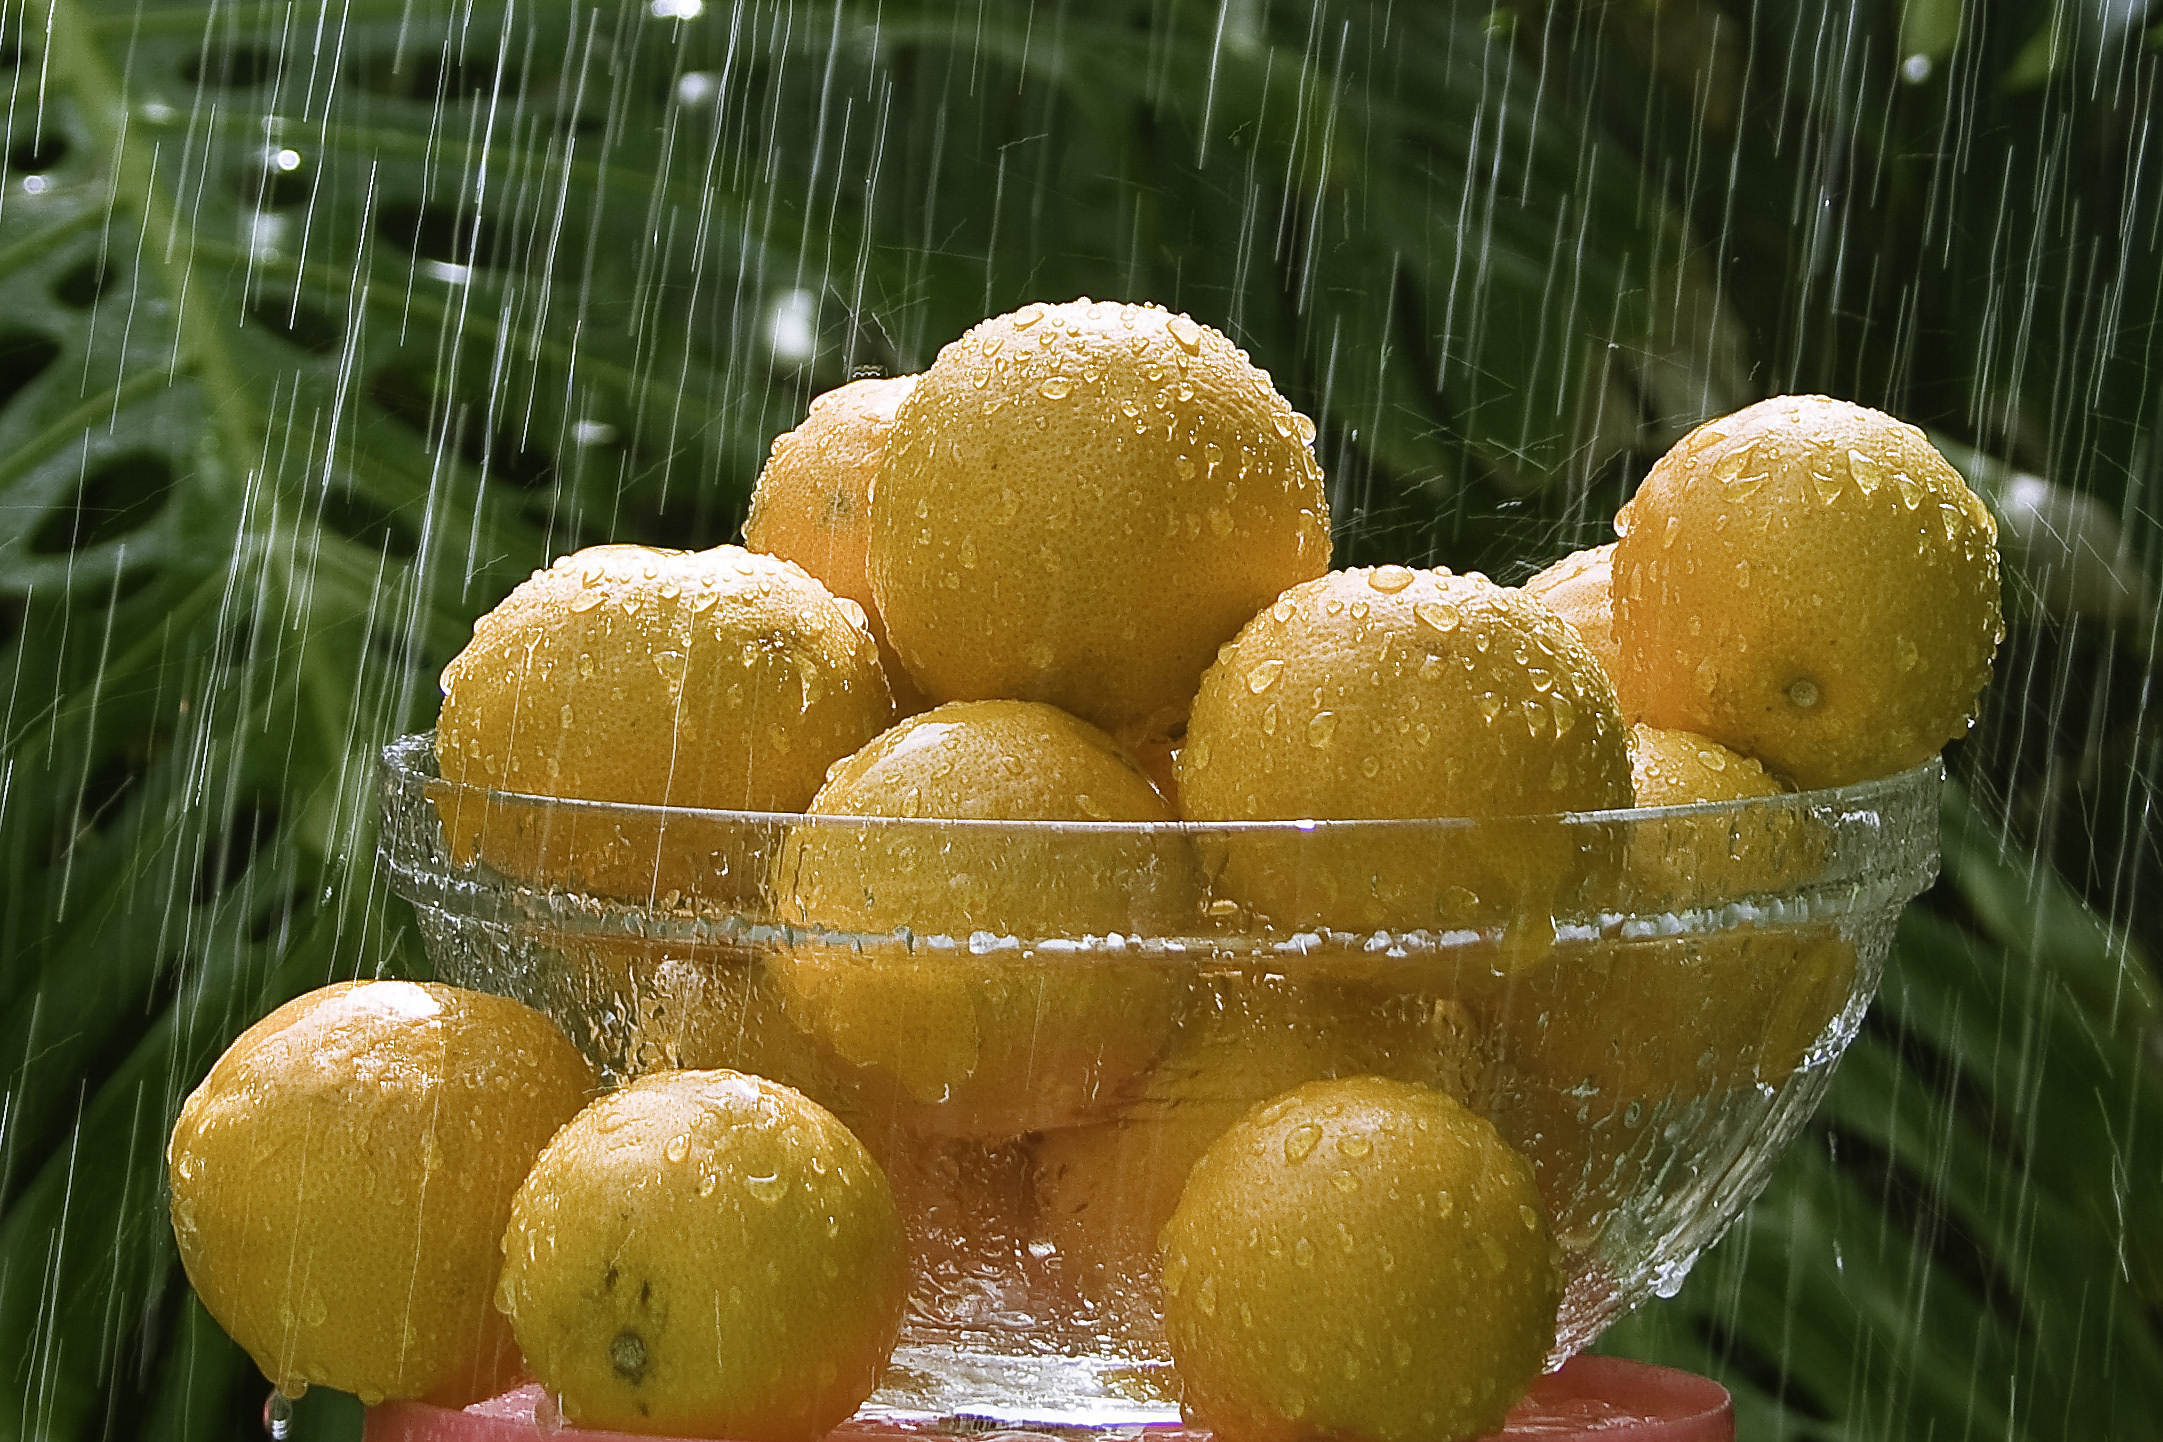 Oranges during rain